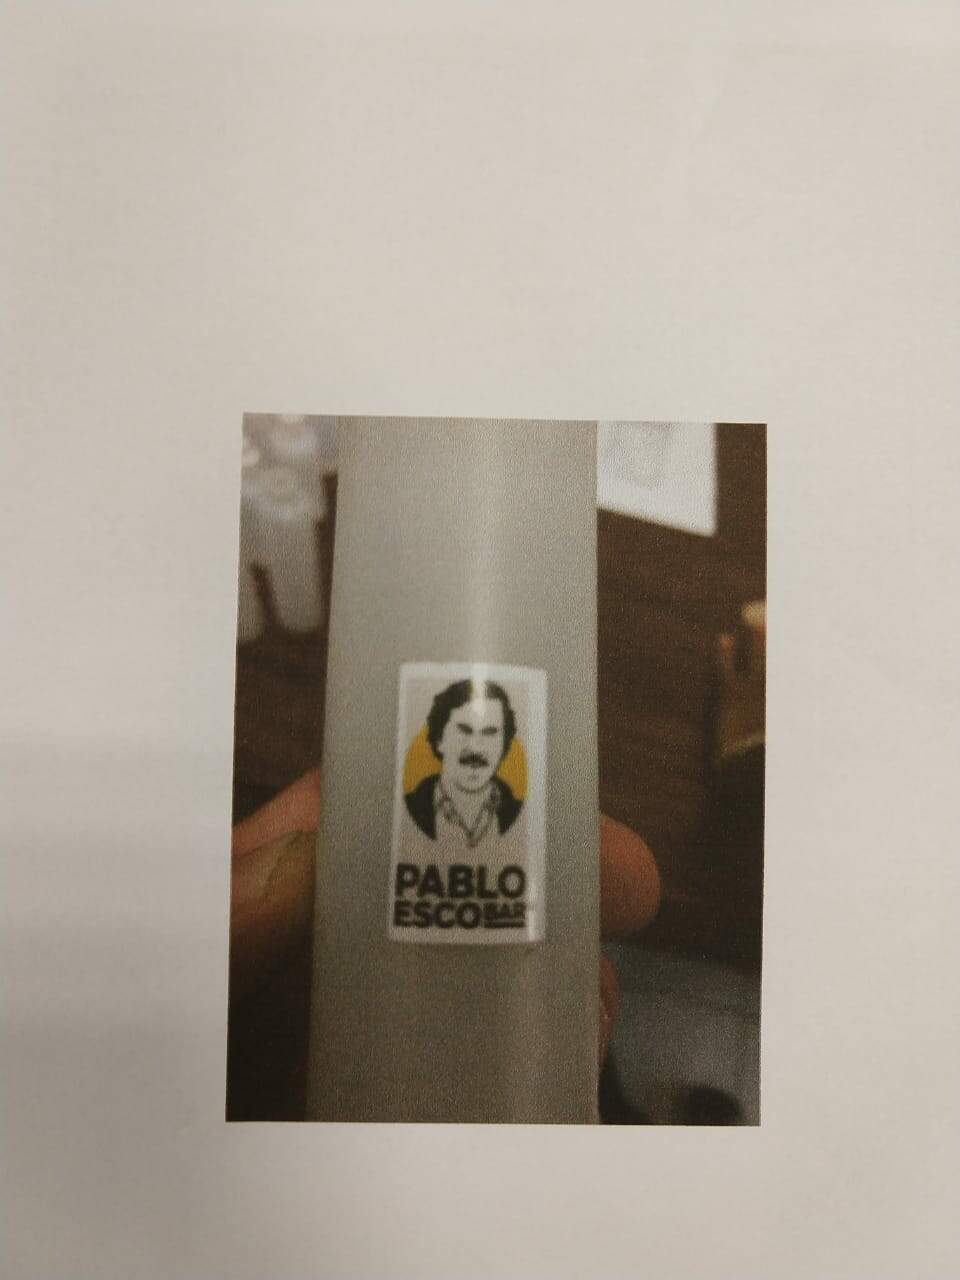 Compartimentos tinham a foto de Pablo Escobar